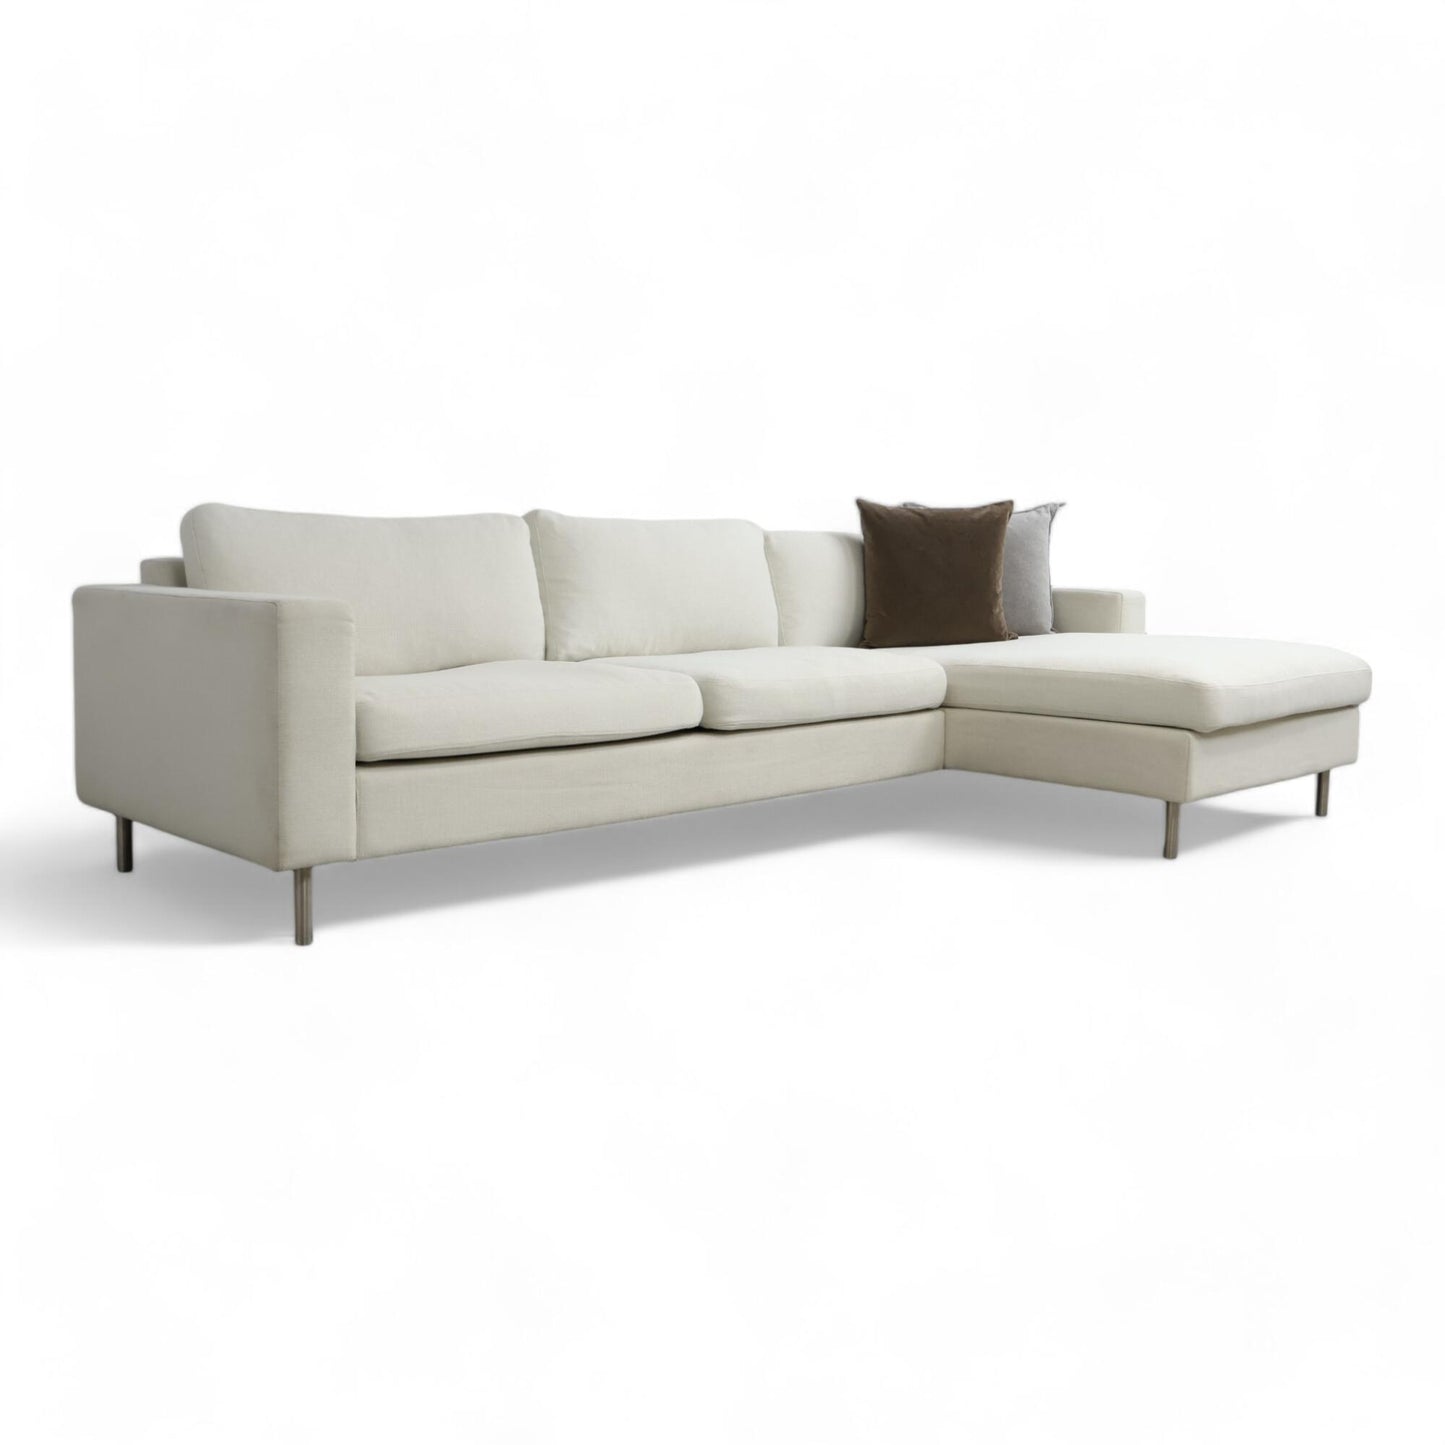 Nyrenset | Off white Bolia Scandinavia sofa med sjeselong